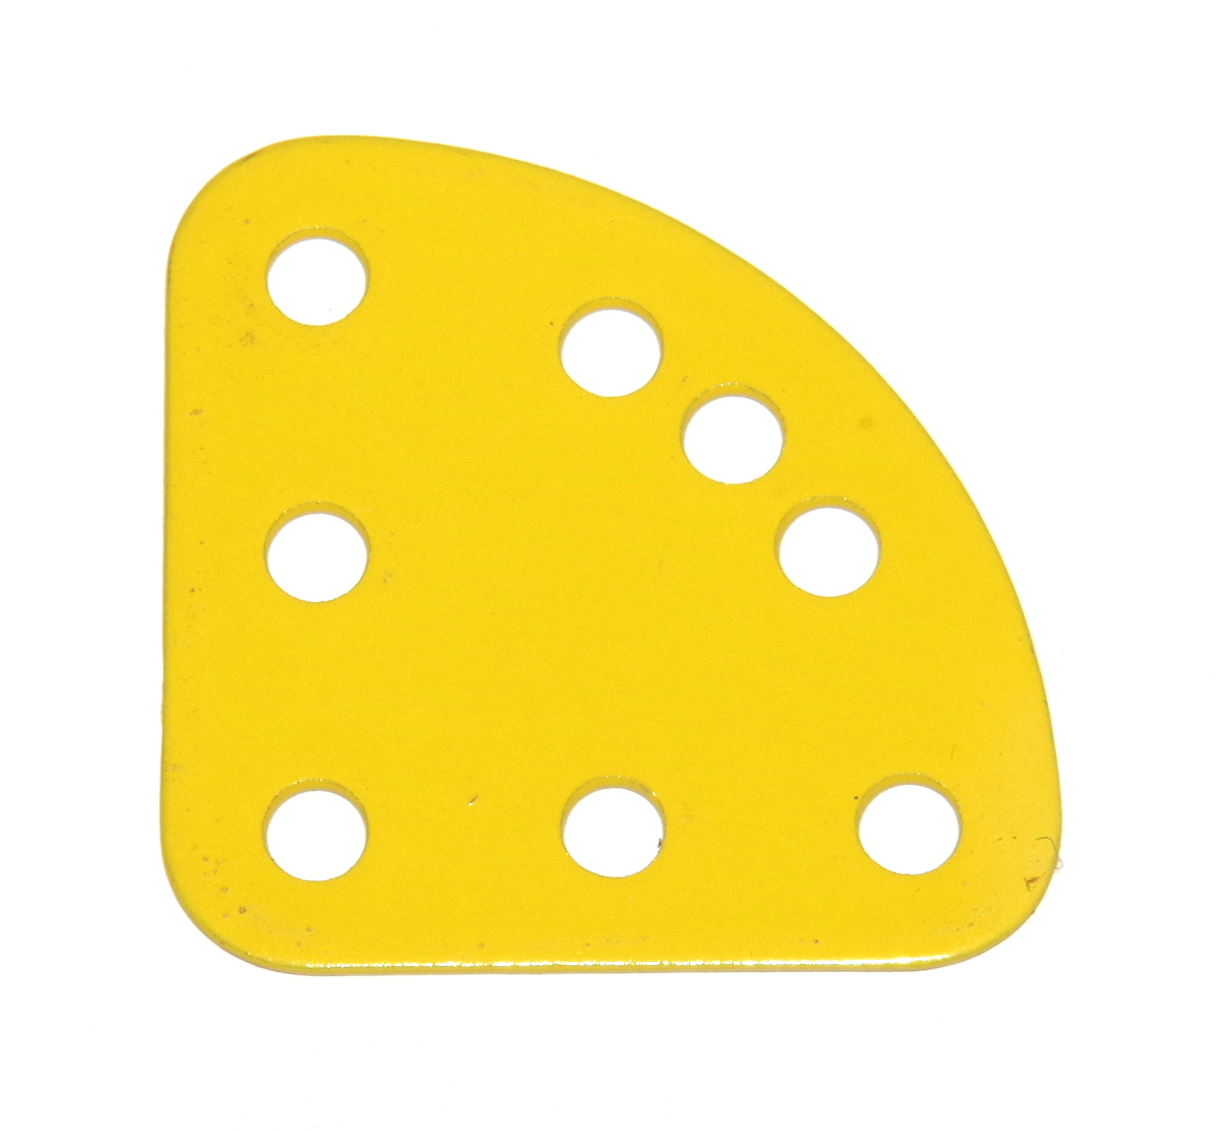 214a Quarter Plate French Yellow Original